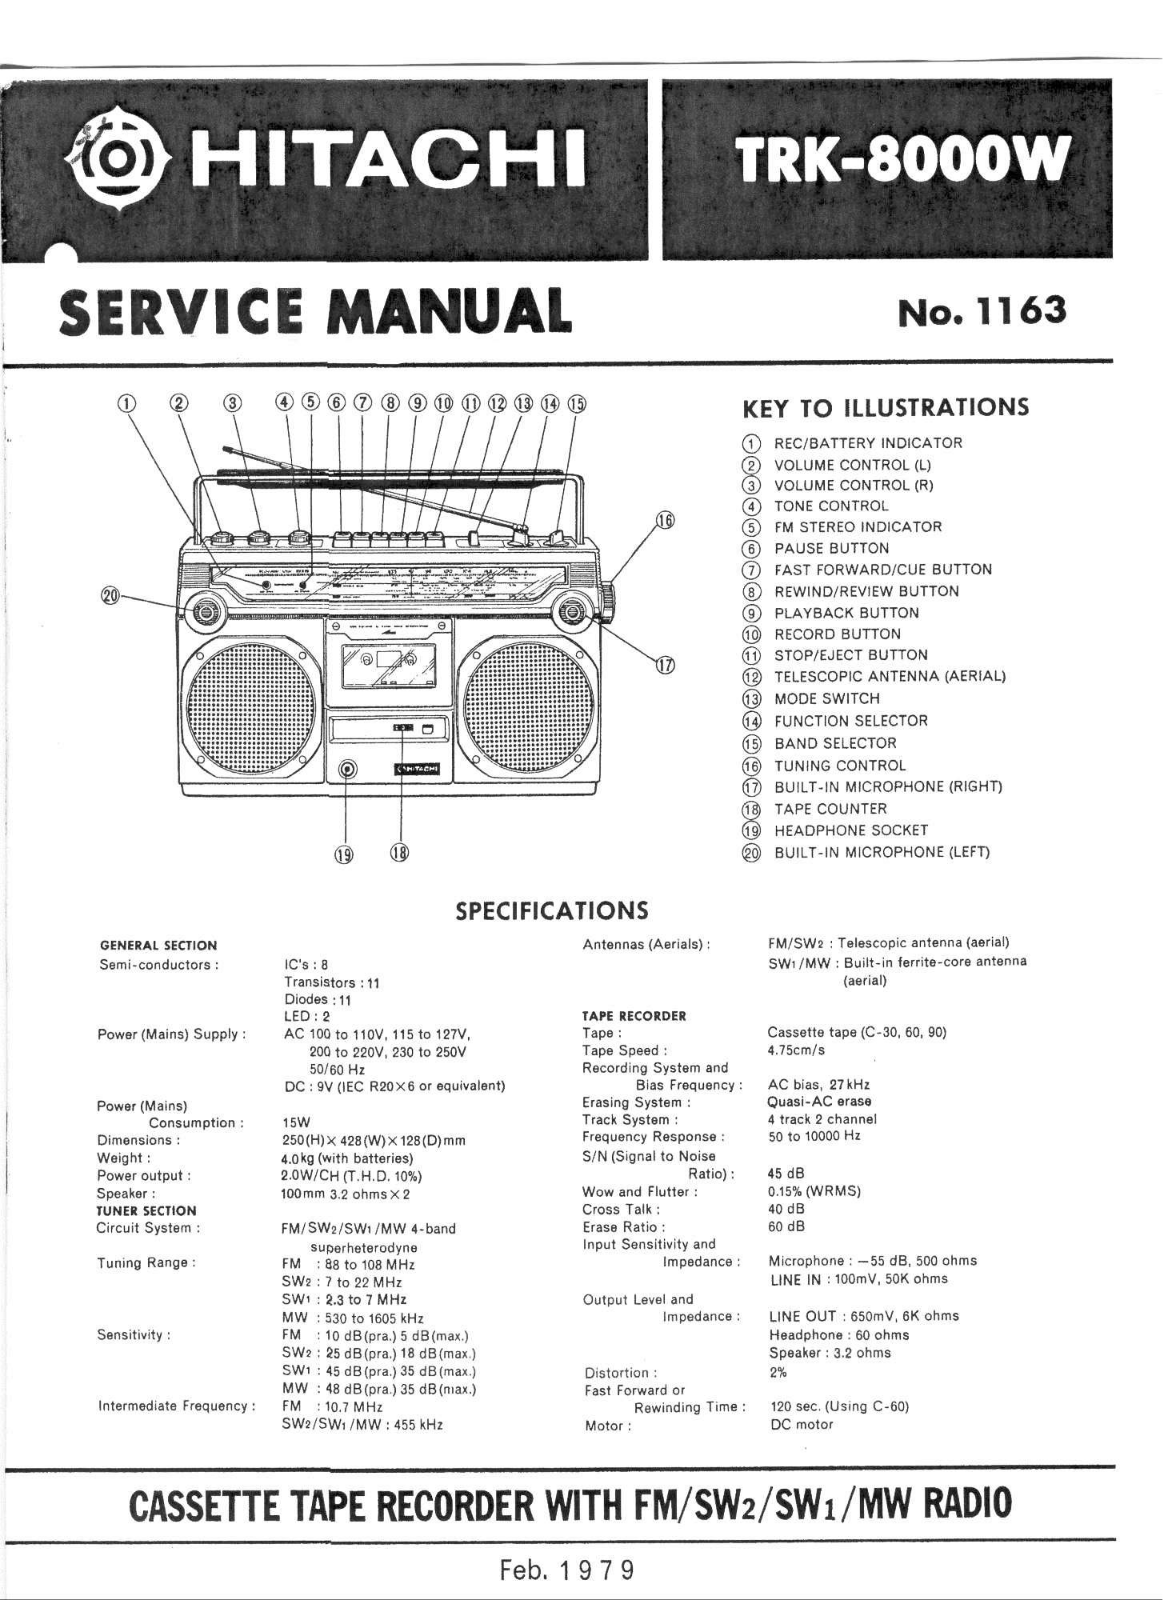 Hitachi TRK-8000-W Service Manual